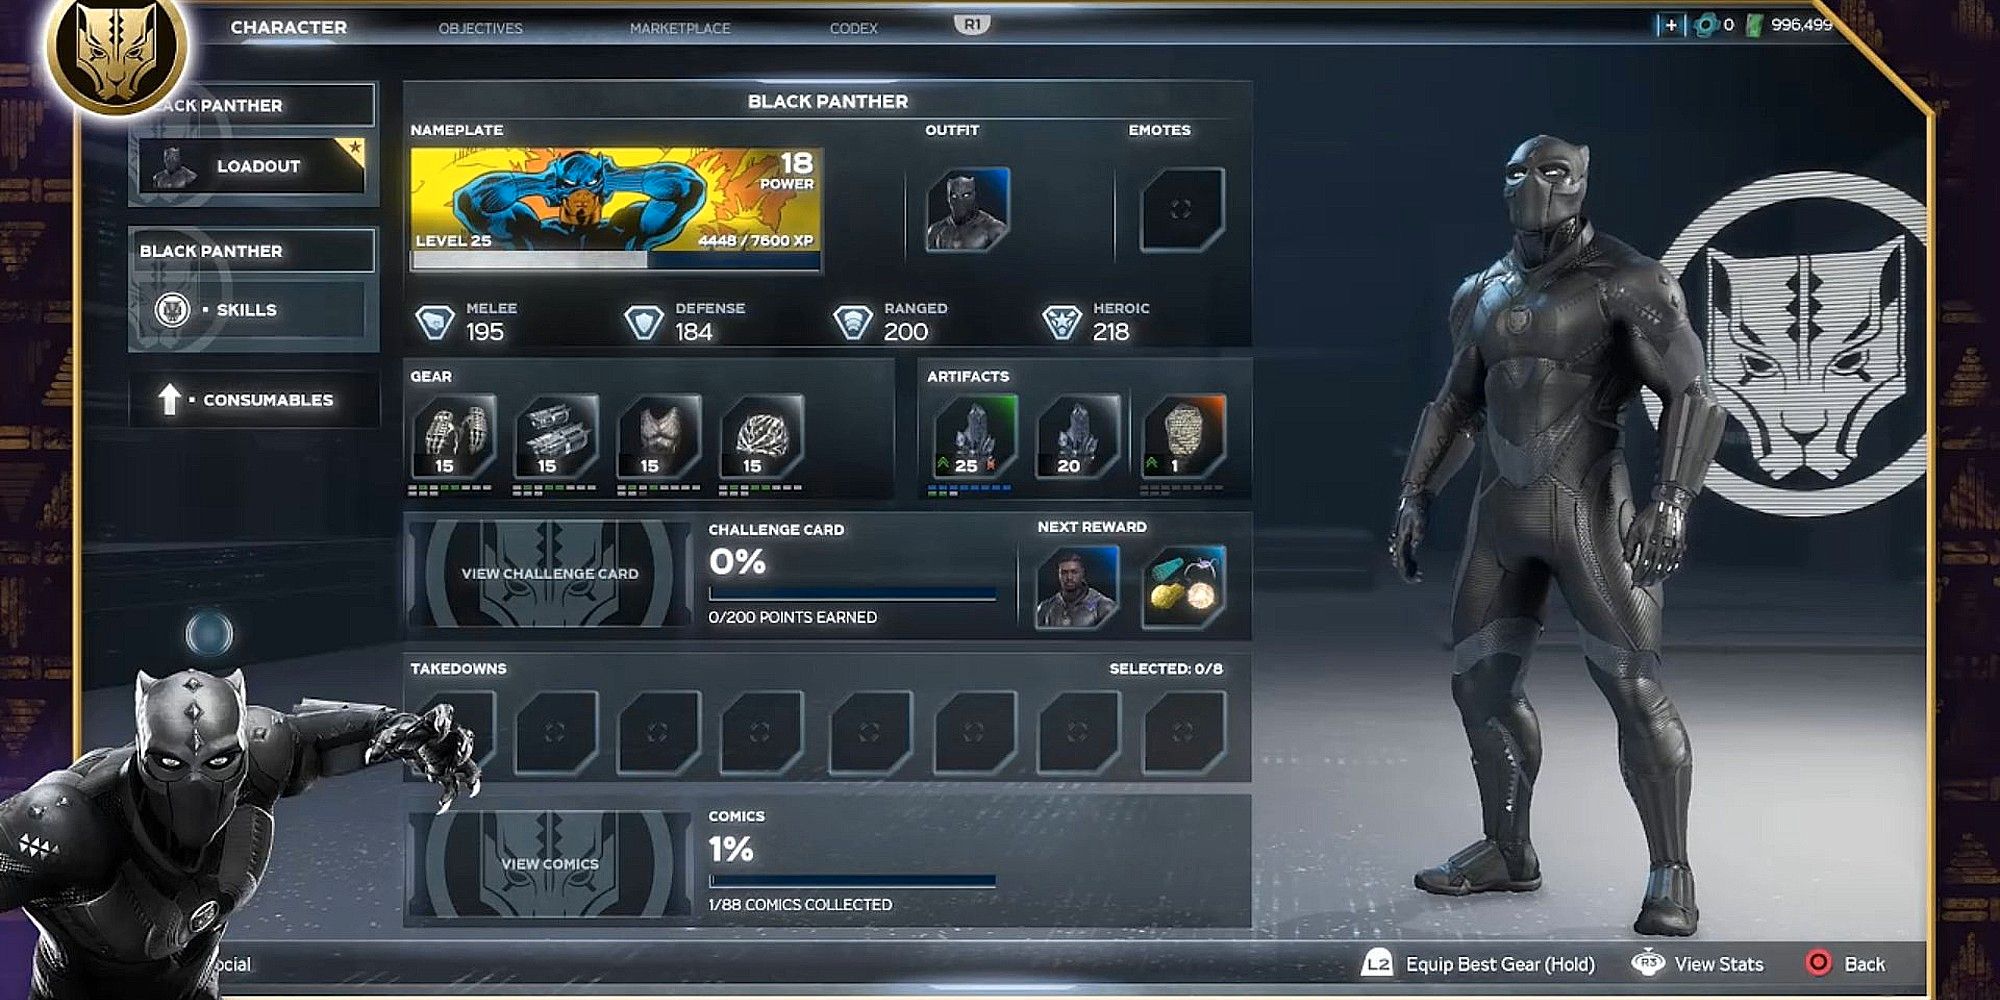 Interface utilisateur retravaillée par Avengers avec Black Panther